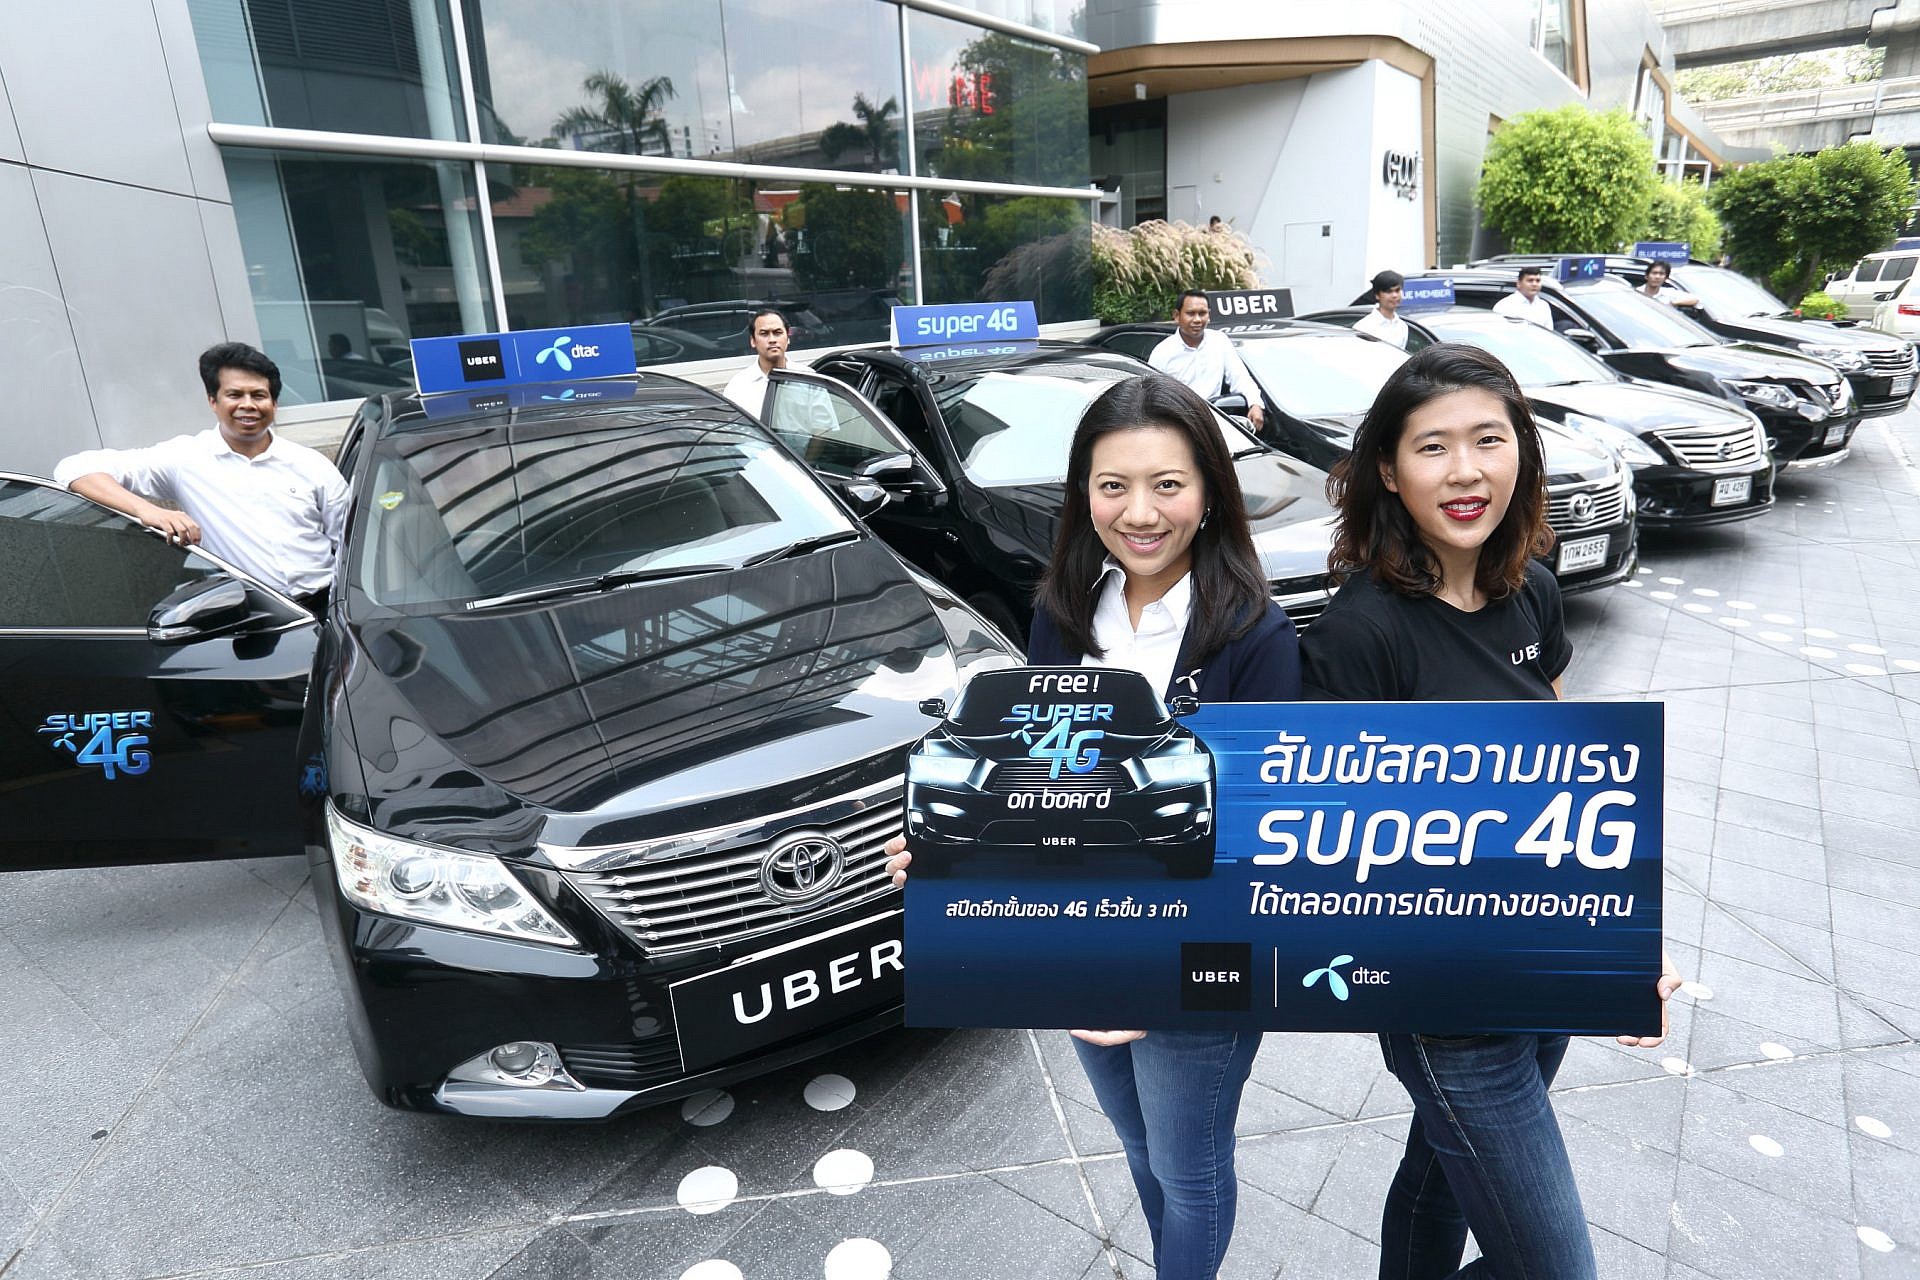 ดีแทคร่วมกับ Uber มอบประสบการณ์สุดพิเศษบนรถ uberX เเละ UberBLACK สำหรับลูกค้า Blue Member